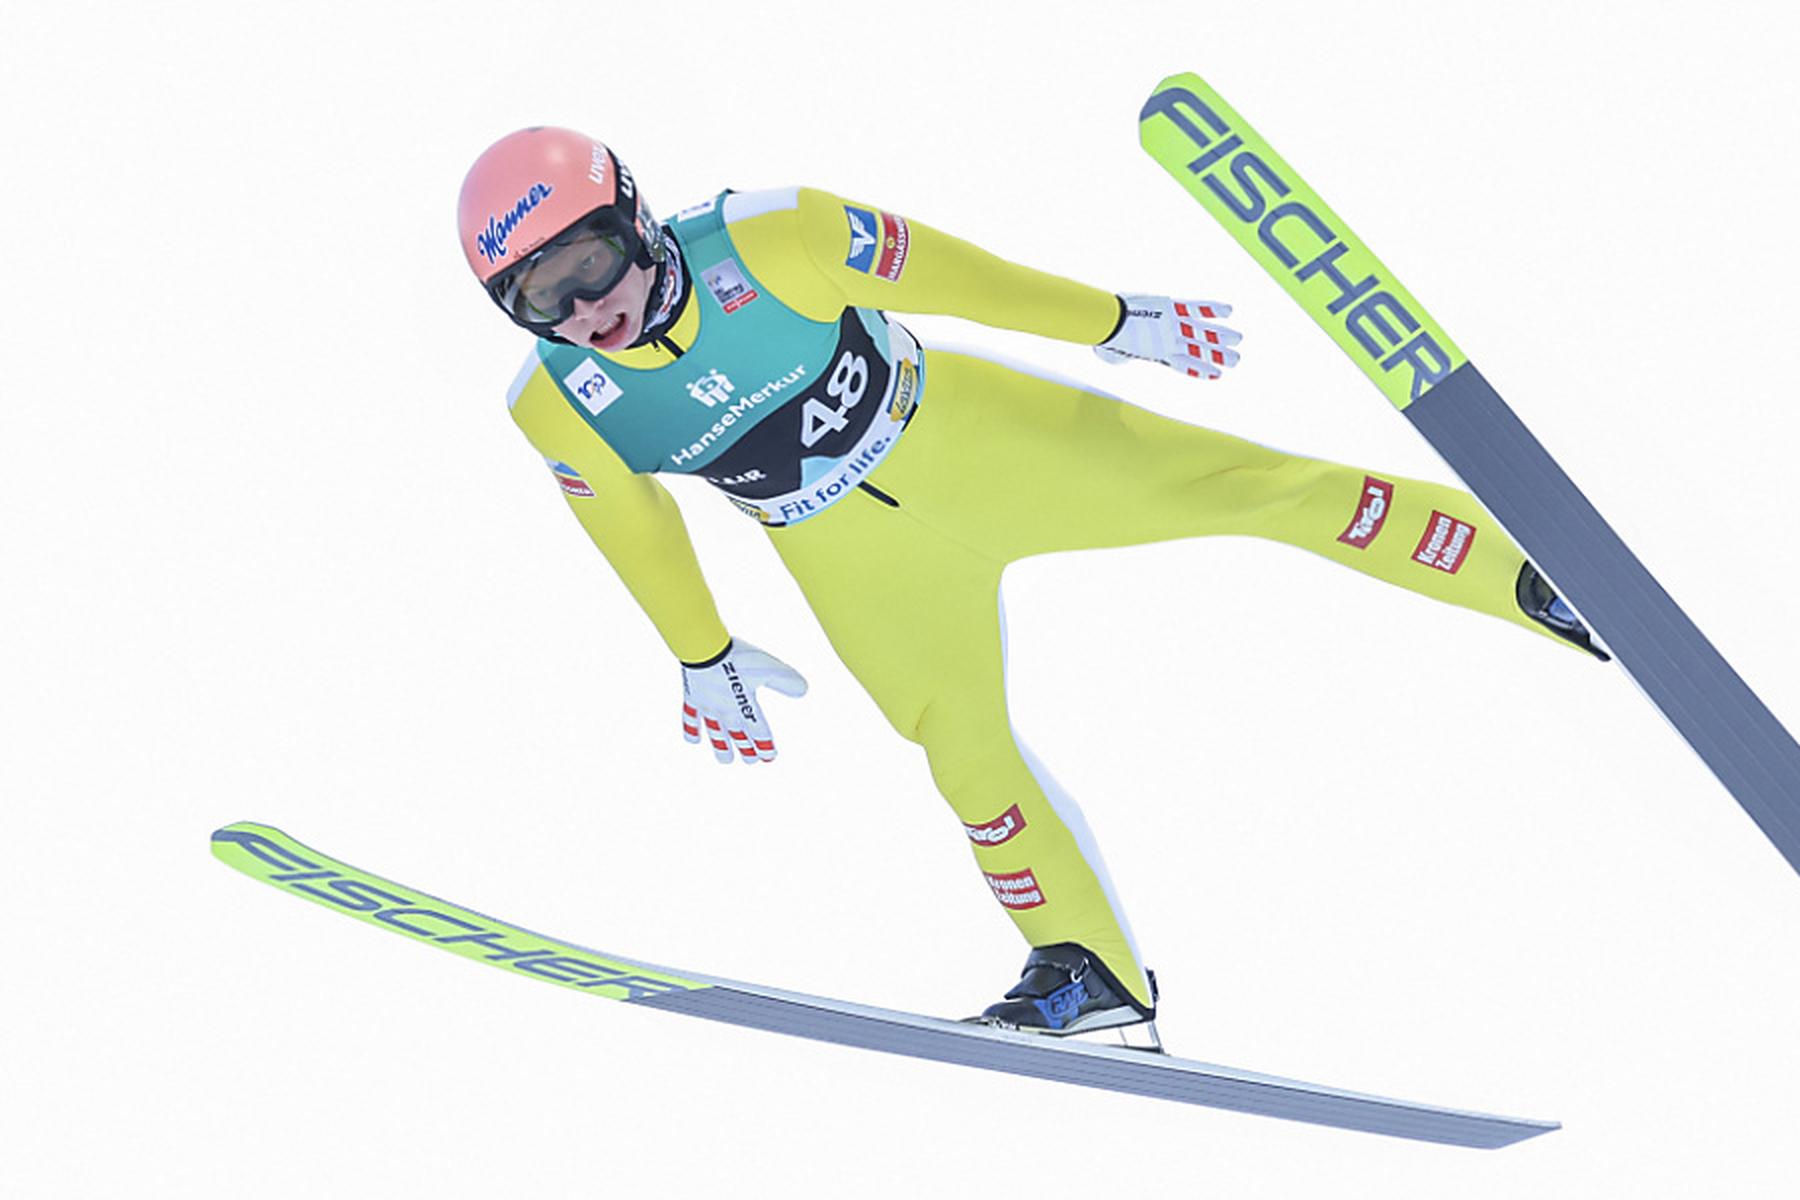 Trondheim: Skispringer Hörl in Trondheim Dritter - Kraft auf Platz fünf